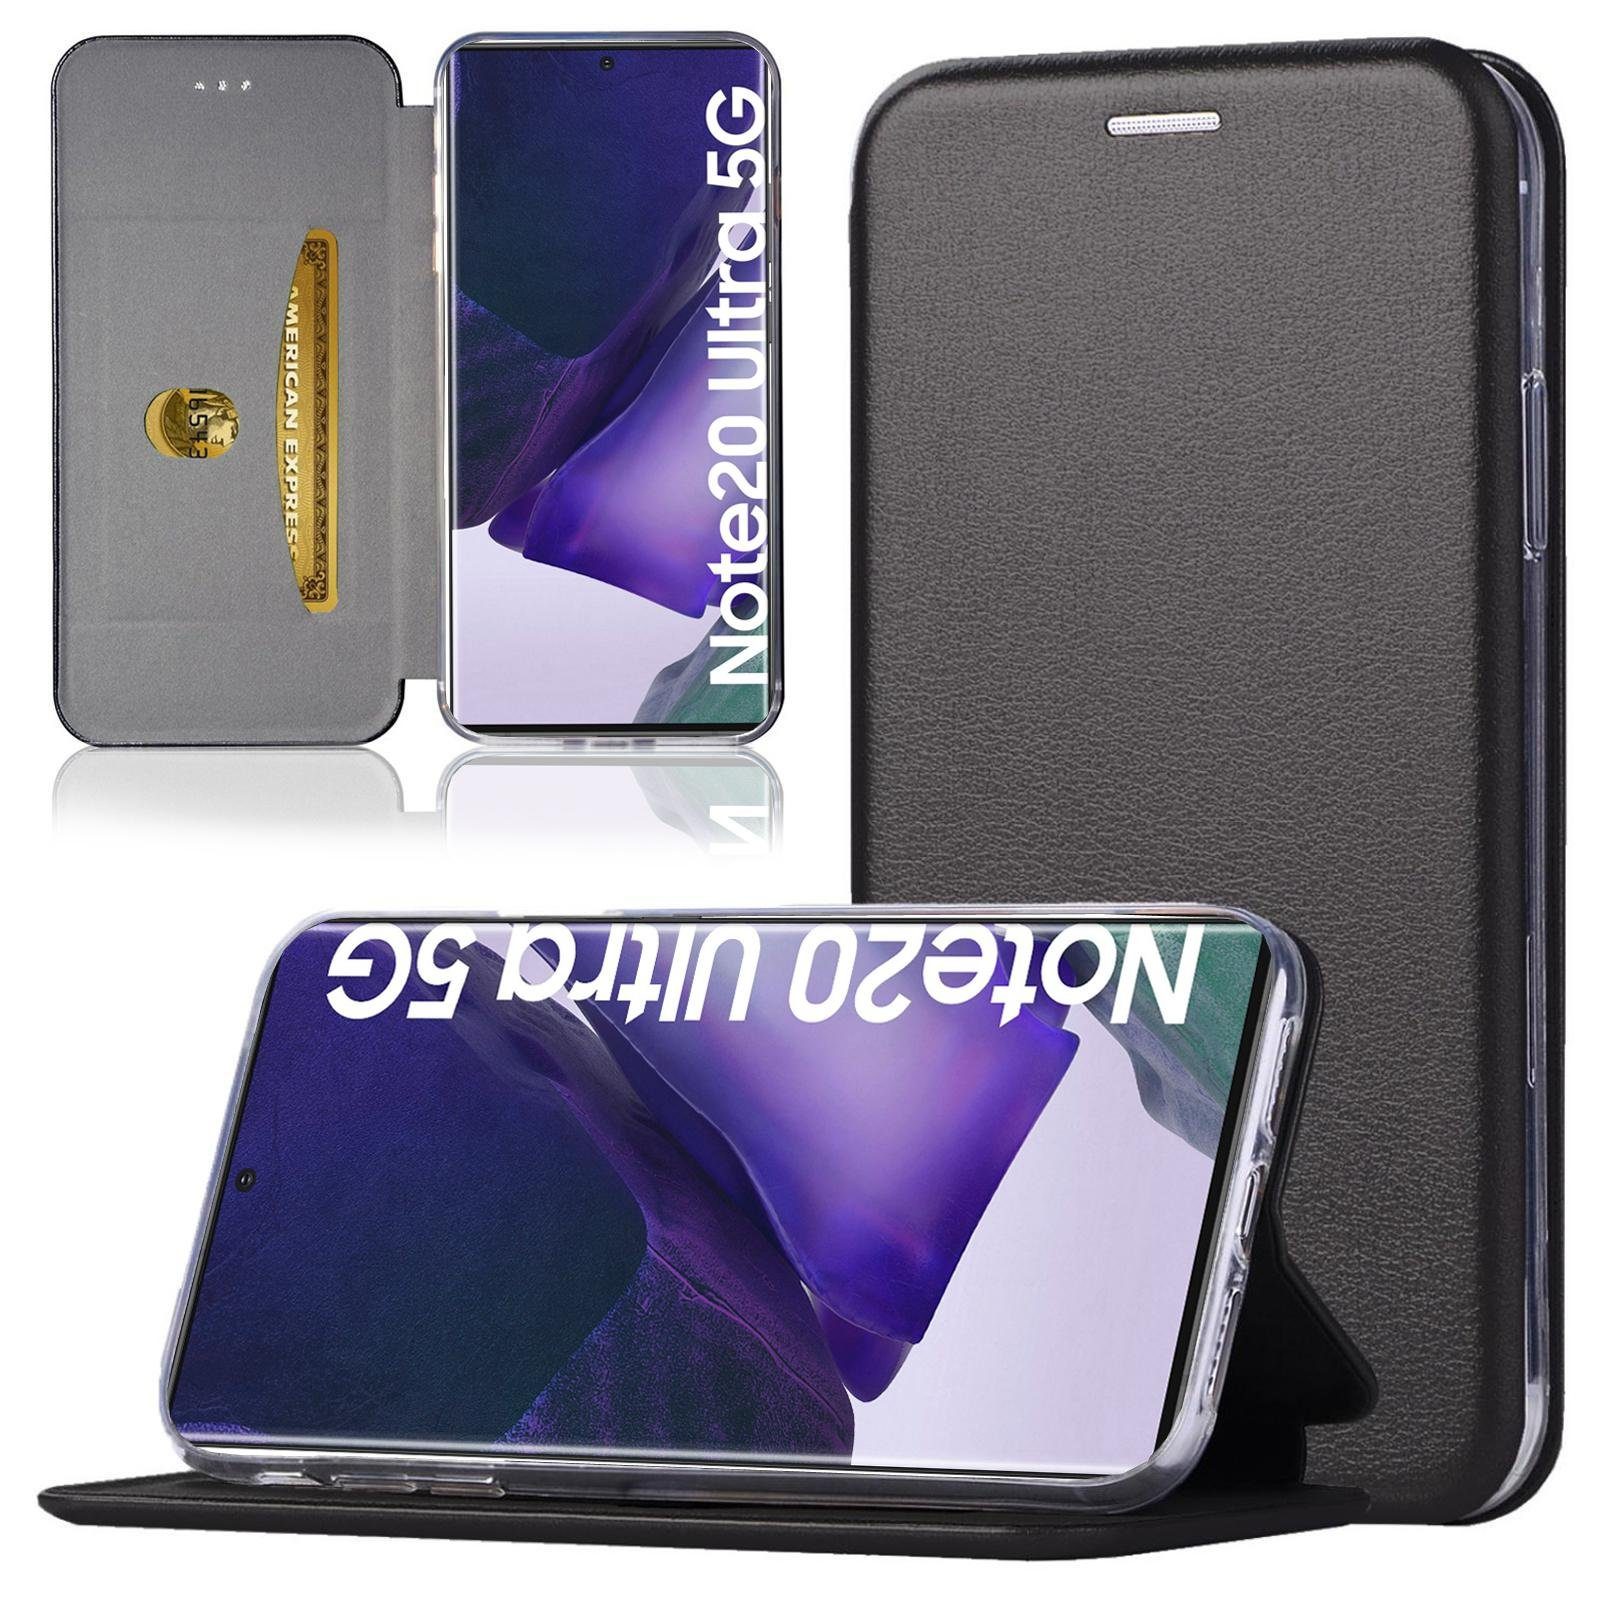 Numerva Handyhülle Handy Tasche Book Case für Samsung Galaxy Note 20 / Note 20 Ultra, Klapphülle Flip Cover Hardcover Schutz Hülle Etui